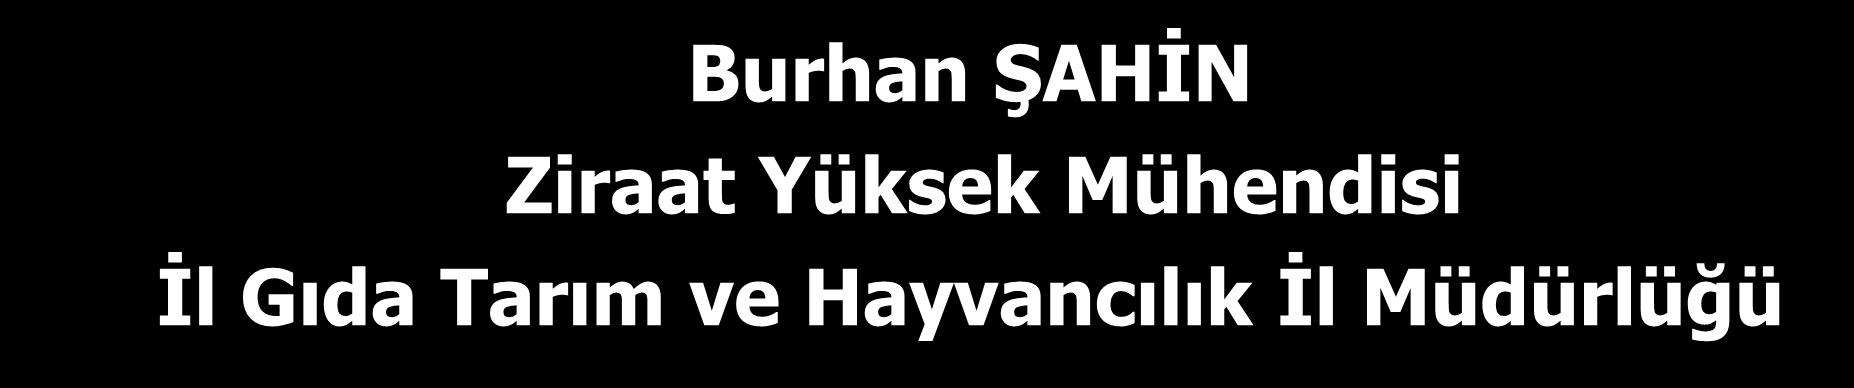 ETKİLERİ Burhan ŞAHİN Ziraat Yüksek Mühendisi